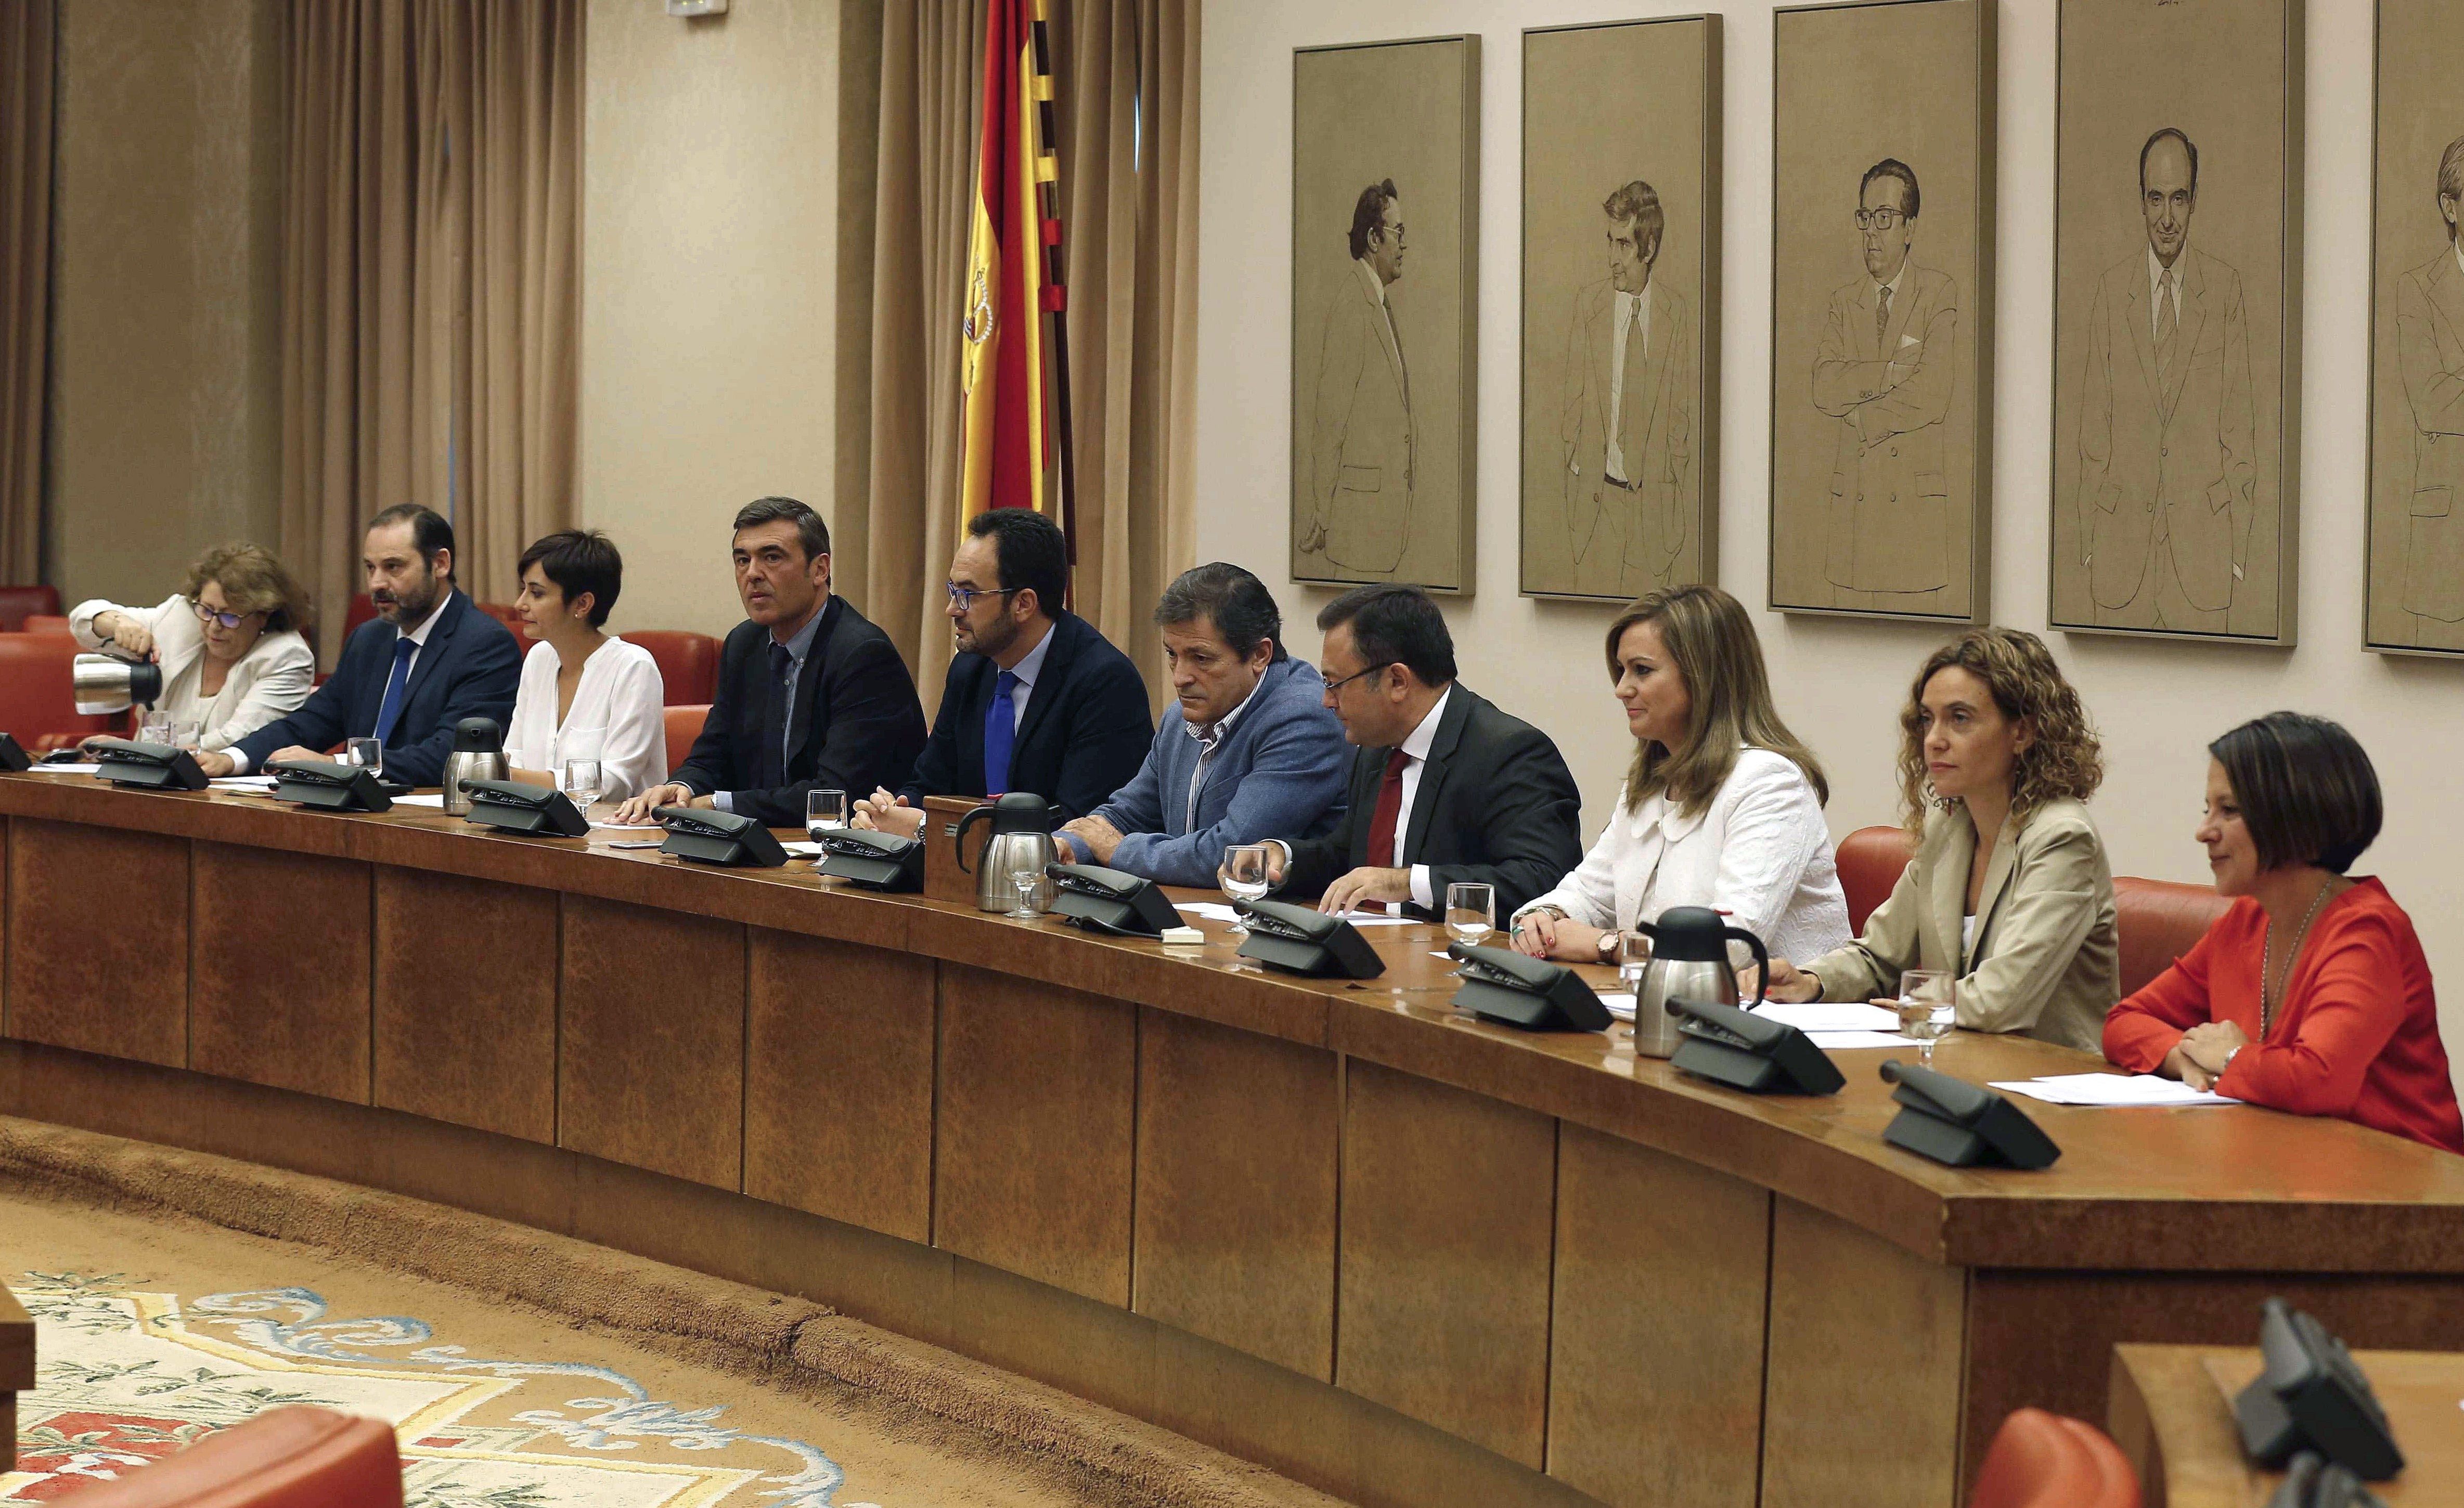 Els diputats del PSOE al Congrés avancen cap a l'abstenció